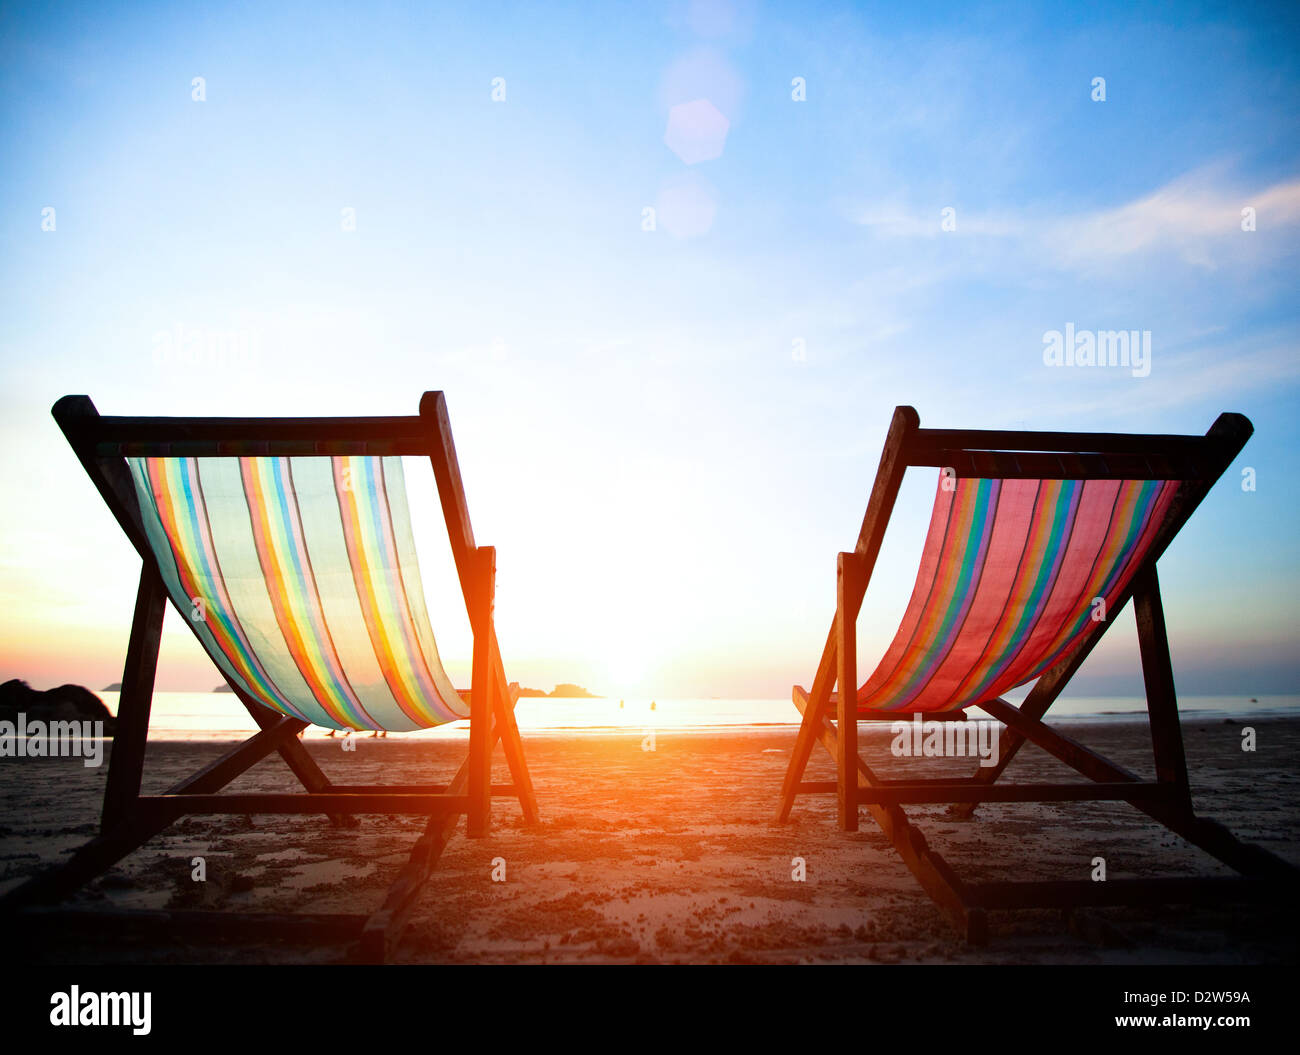 Urlaub-Konzept: paar Strand Liegestühle auf der menschenleeren Küste Meer bei Sonnenaufgang. Stockfoto